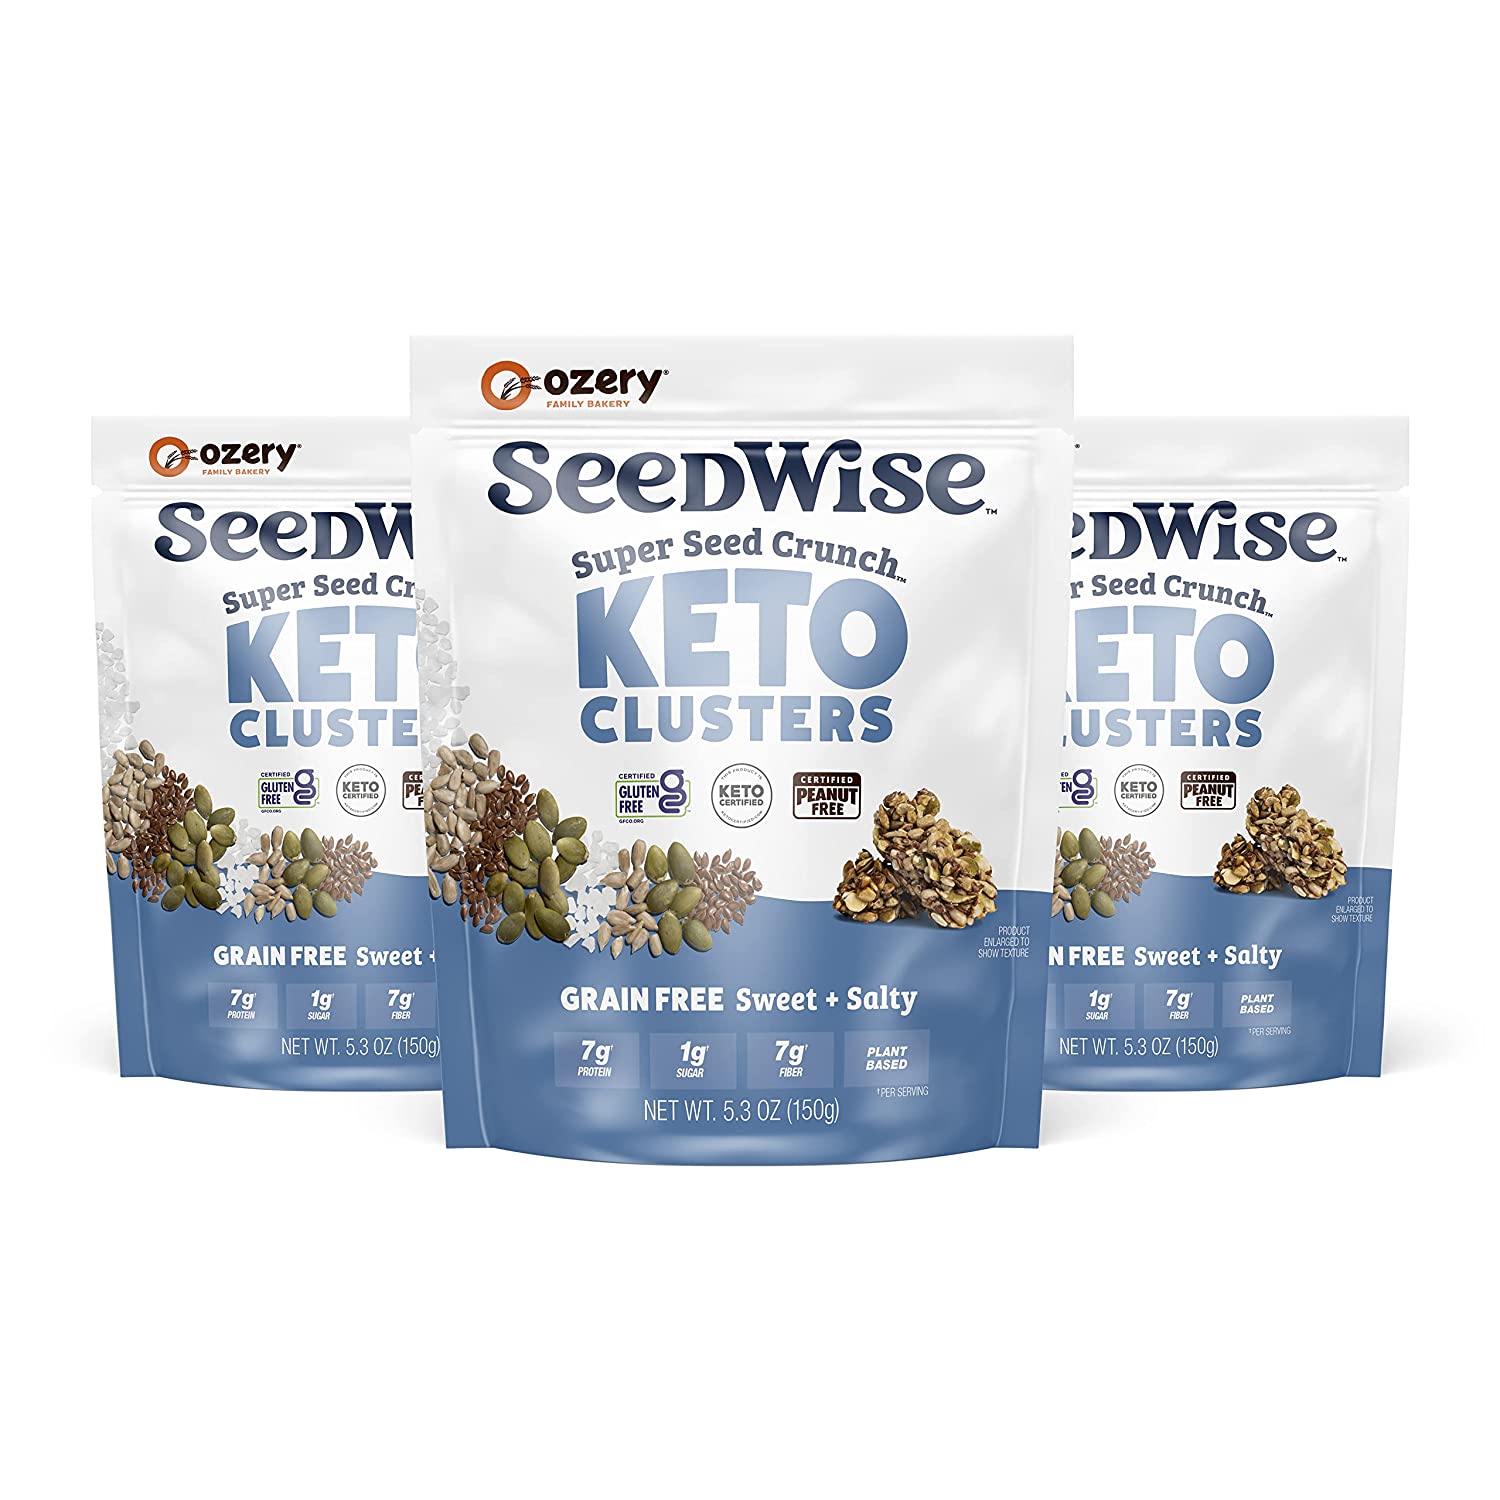 Seedwise